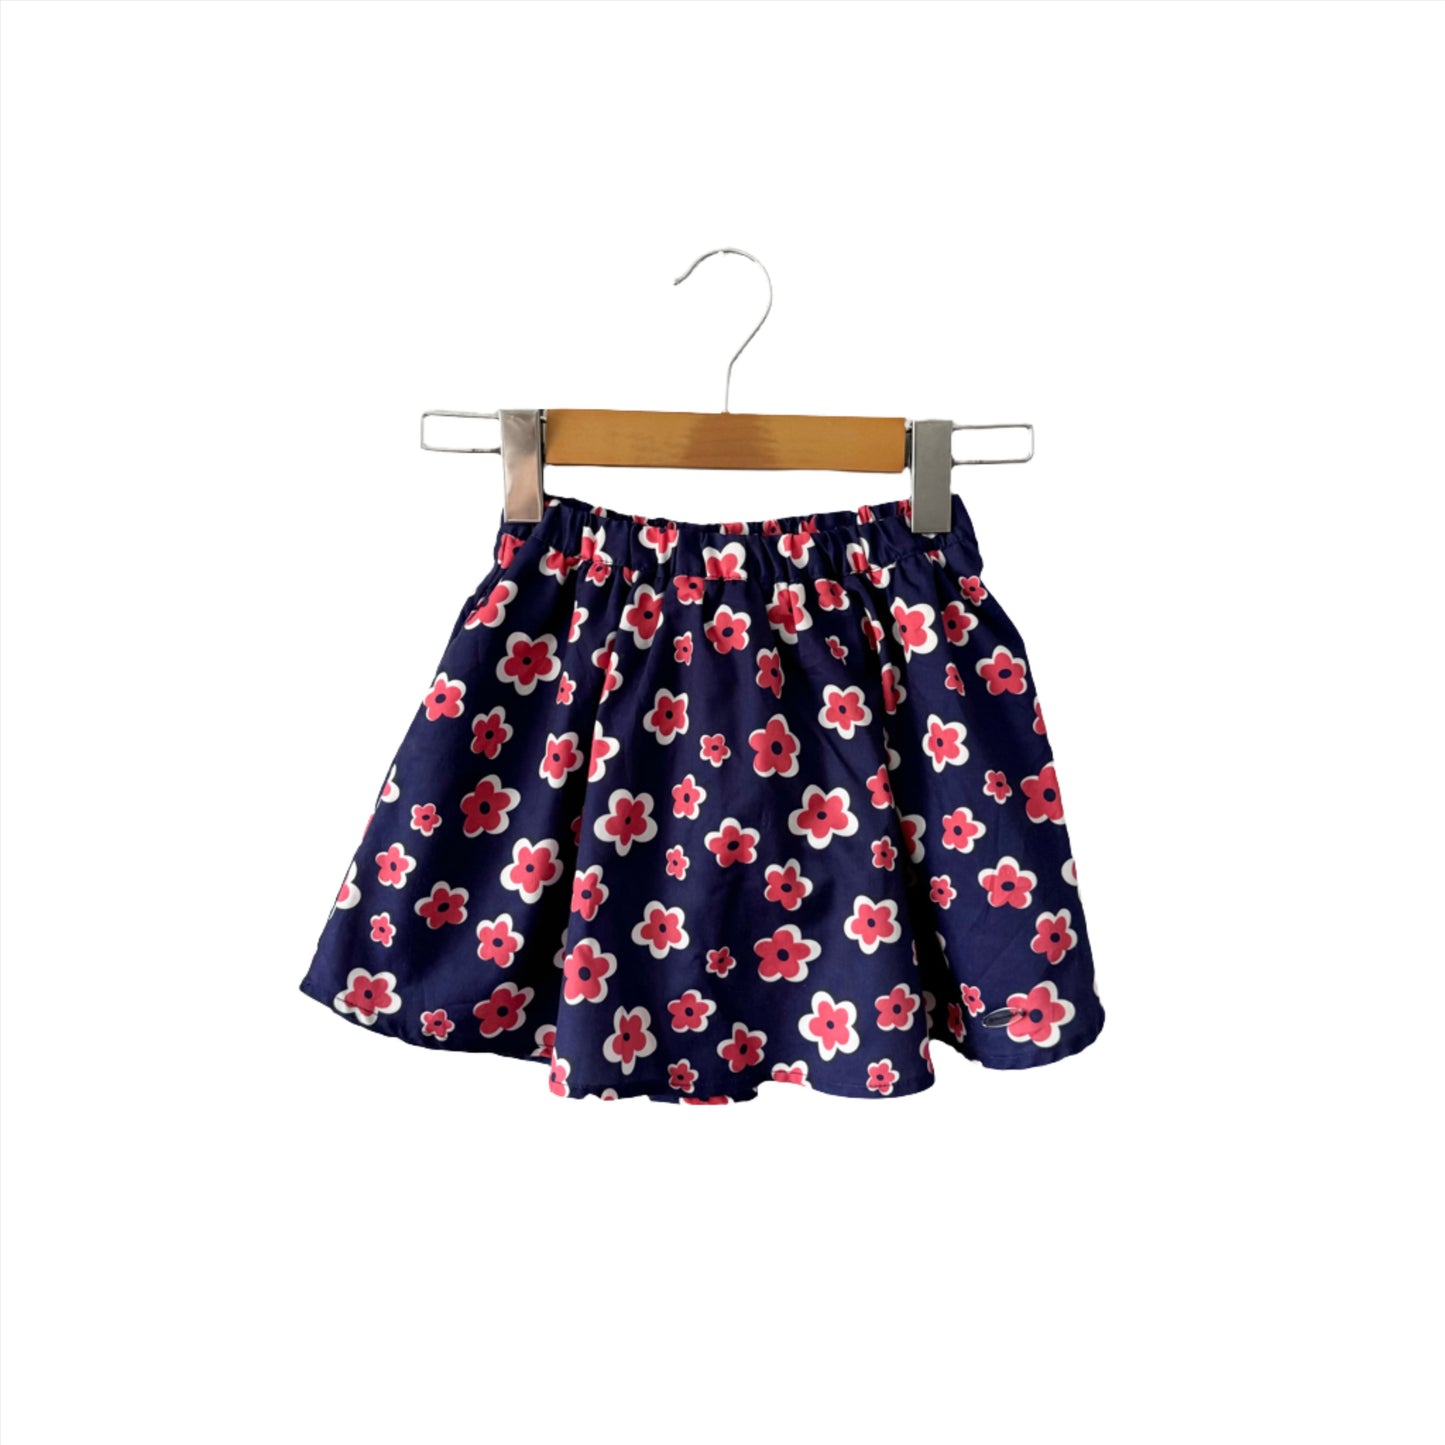 American Girl / Navy floral skirt / 6Y